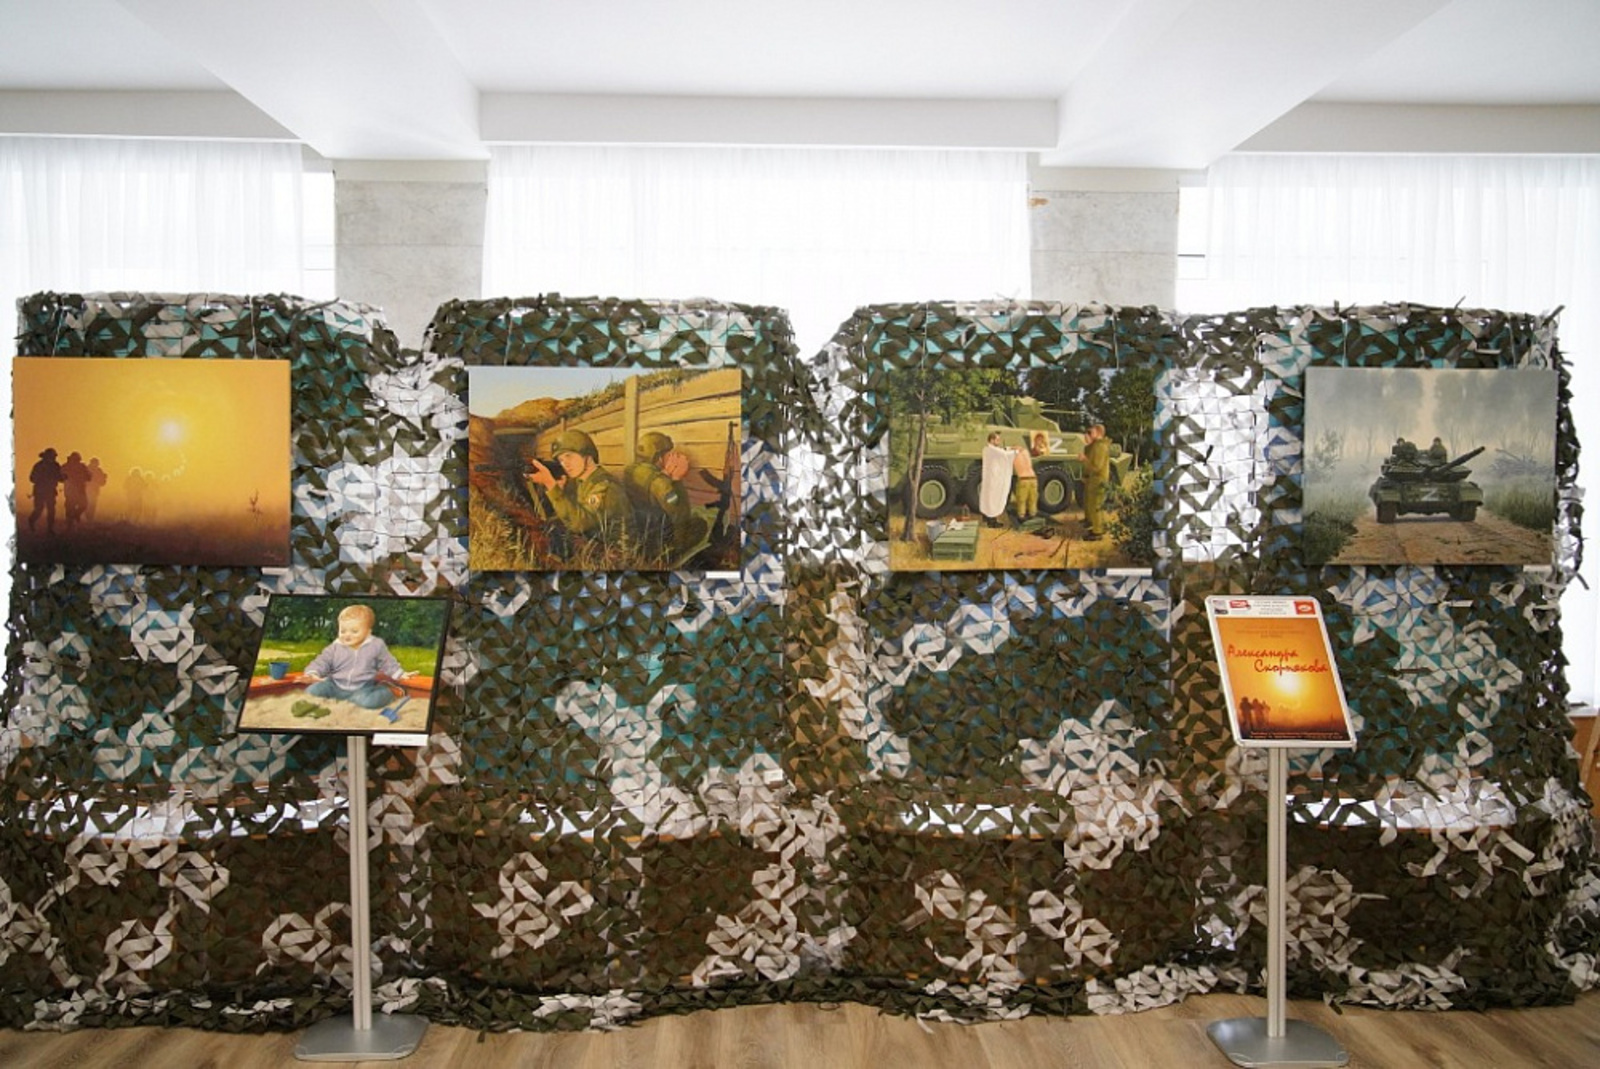 Радий Хабиров посетил выставку уфимского художника Александра Скорнякова